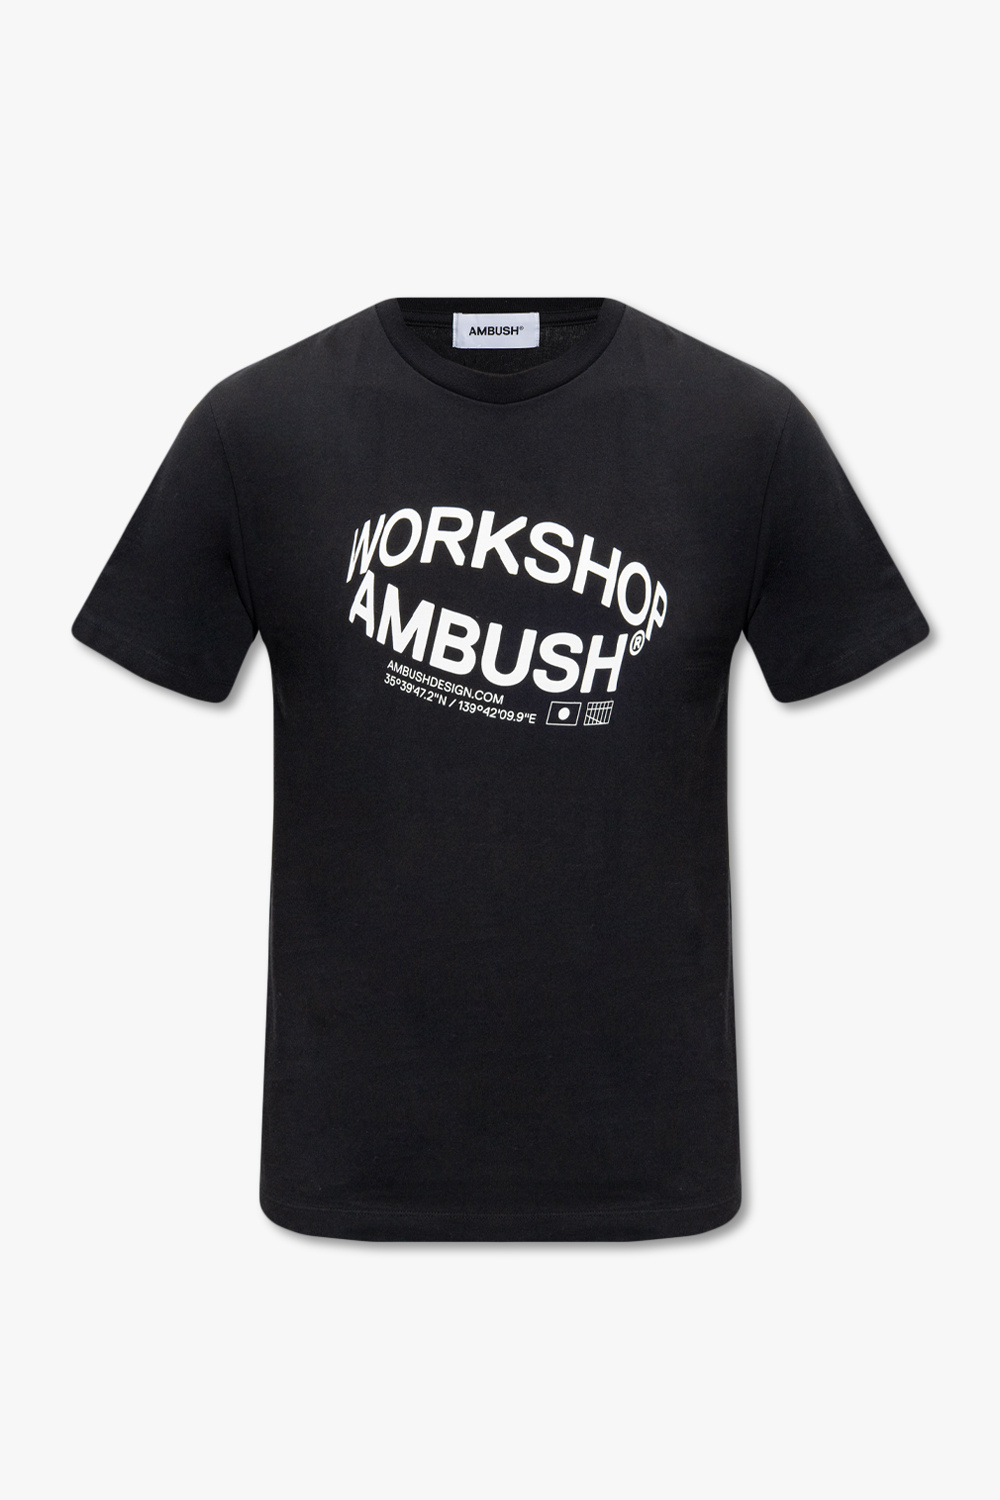 T-shirt z krótkim rękawem okrągły dekolt - GenesinlifeShops GB ...